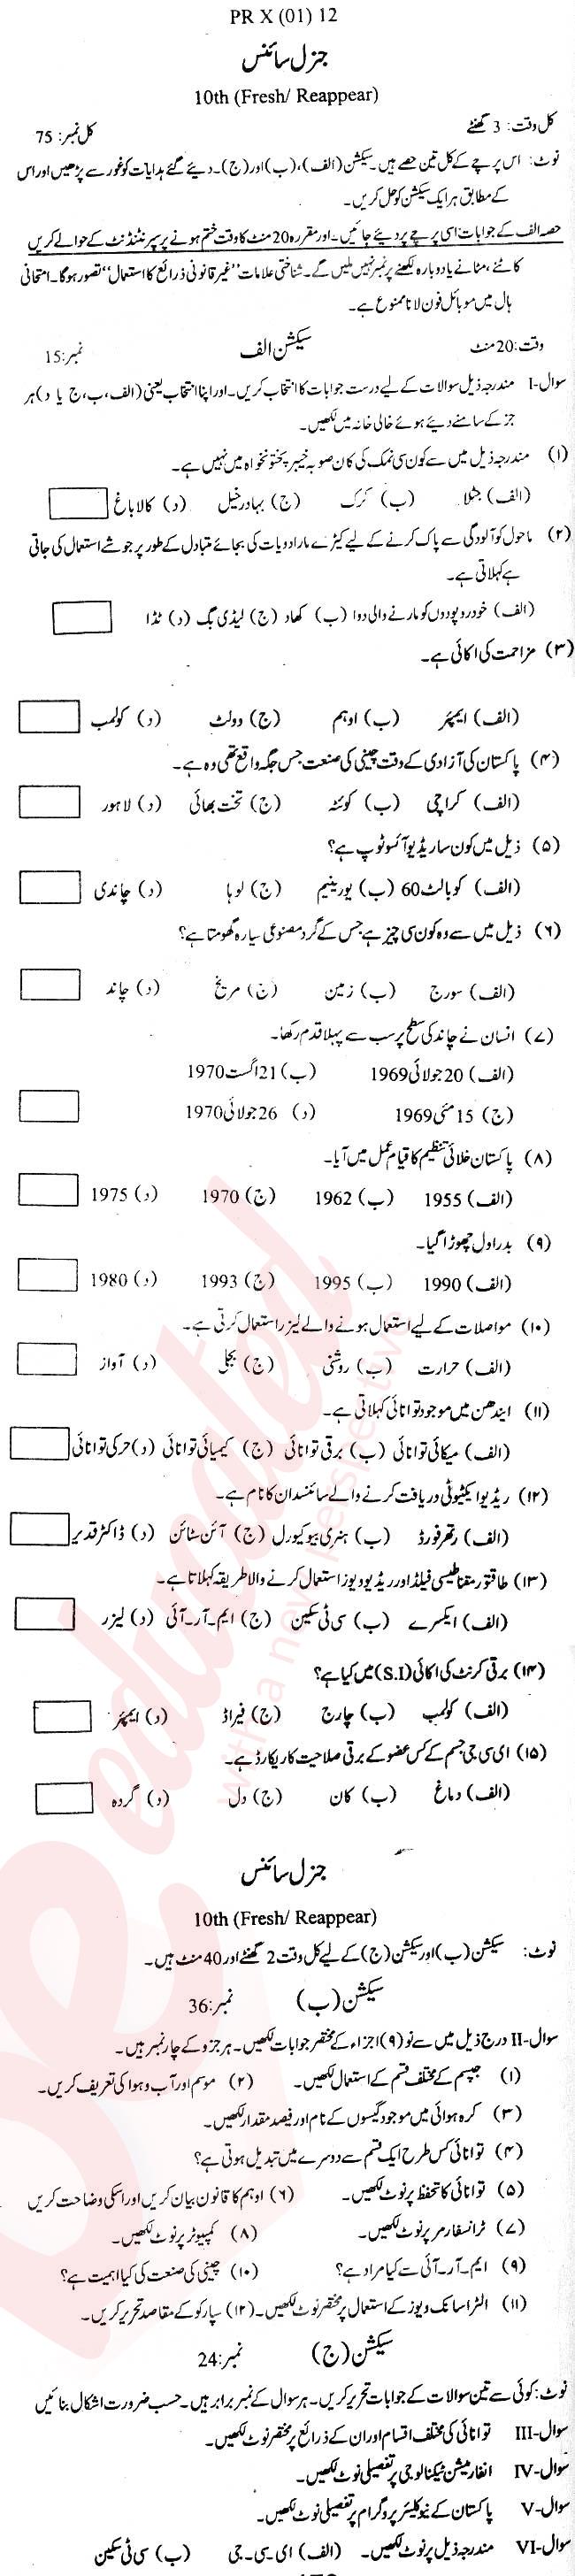 General Science 10th Urdu Medium Past Paper Group 1 BISE DI Khan 2012